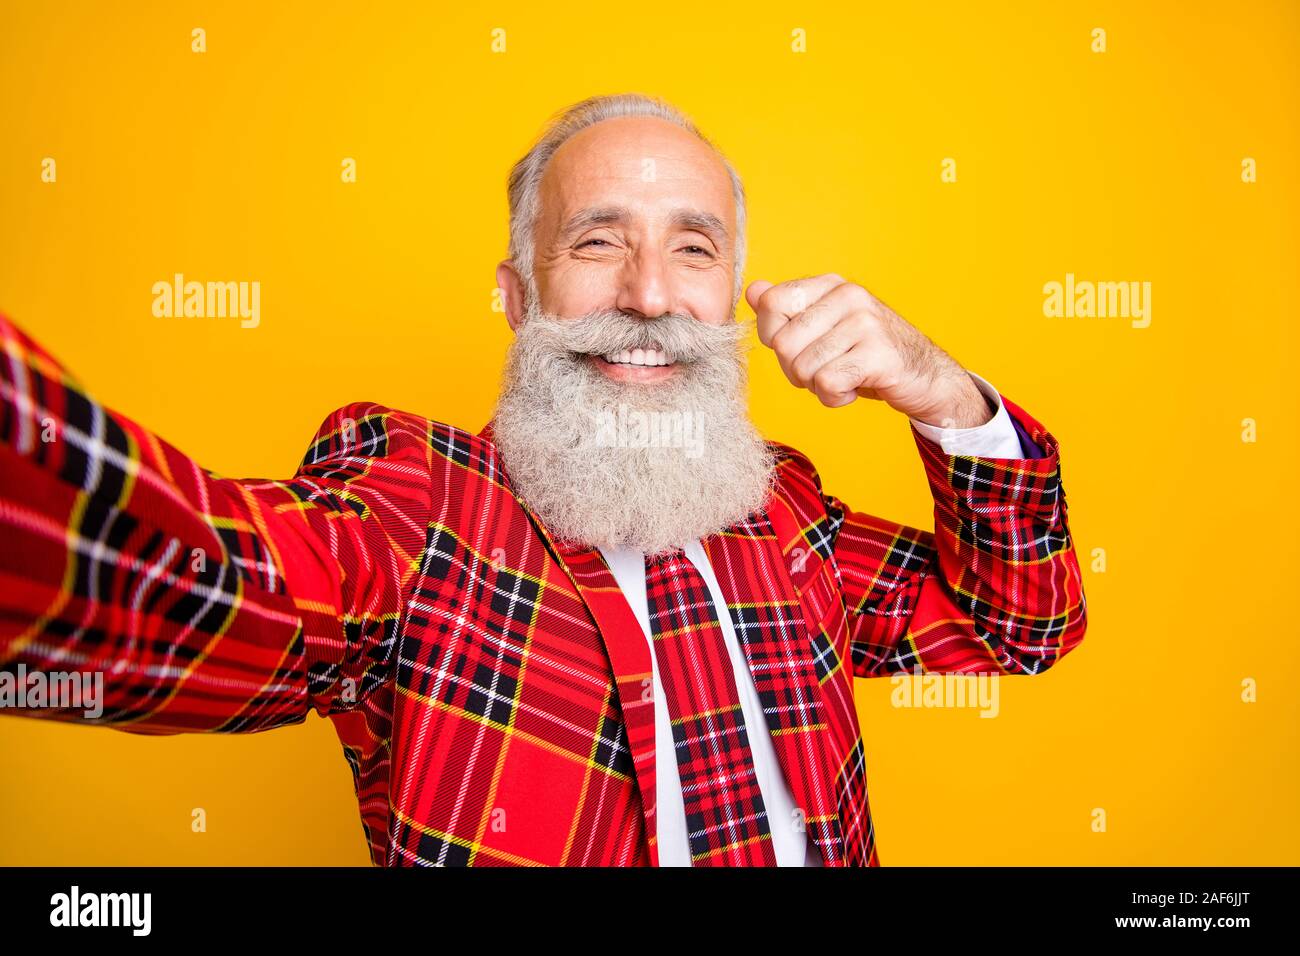 Nahaufnahme der kühle Blick opa Kerl spielen mit weißen, eleganten  Schnurrbart zu tragen selfies hipster Plaid blazer Krawatte kostüm Kleidung  isoliert Stockfotografie - Alamy